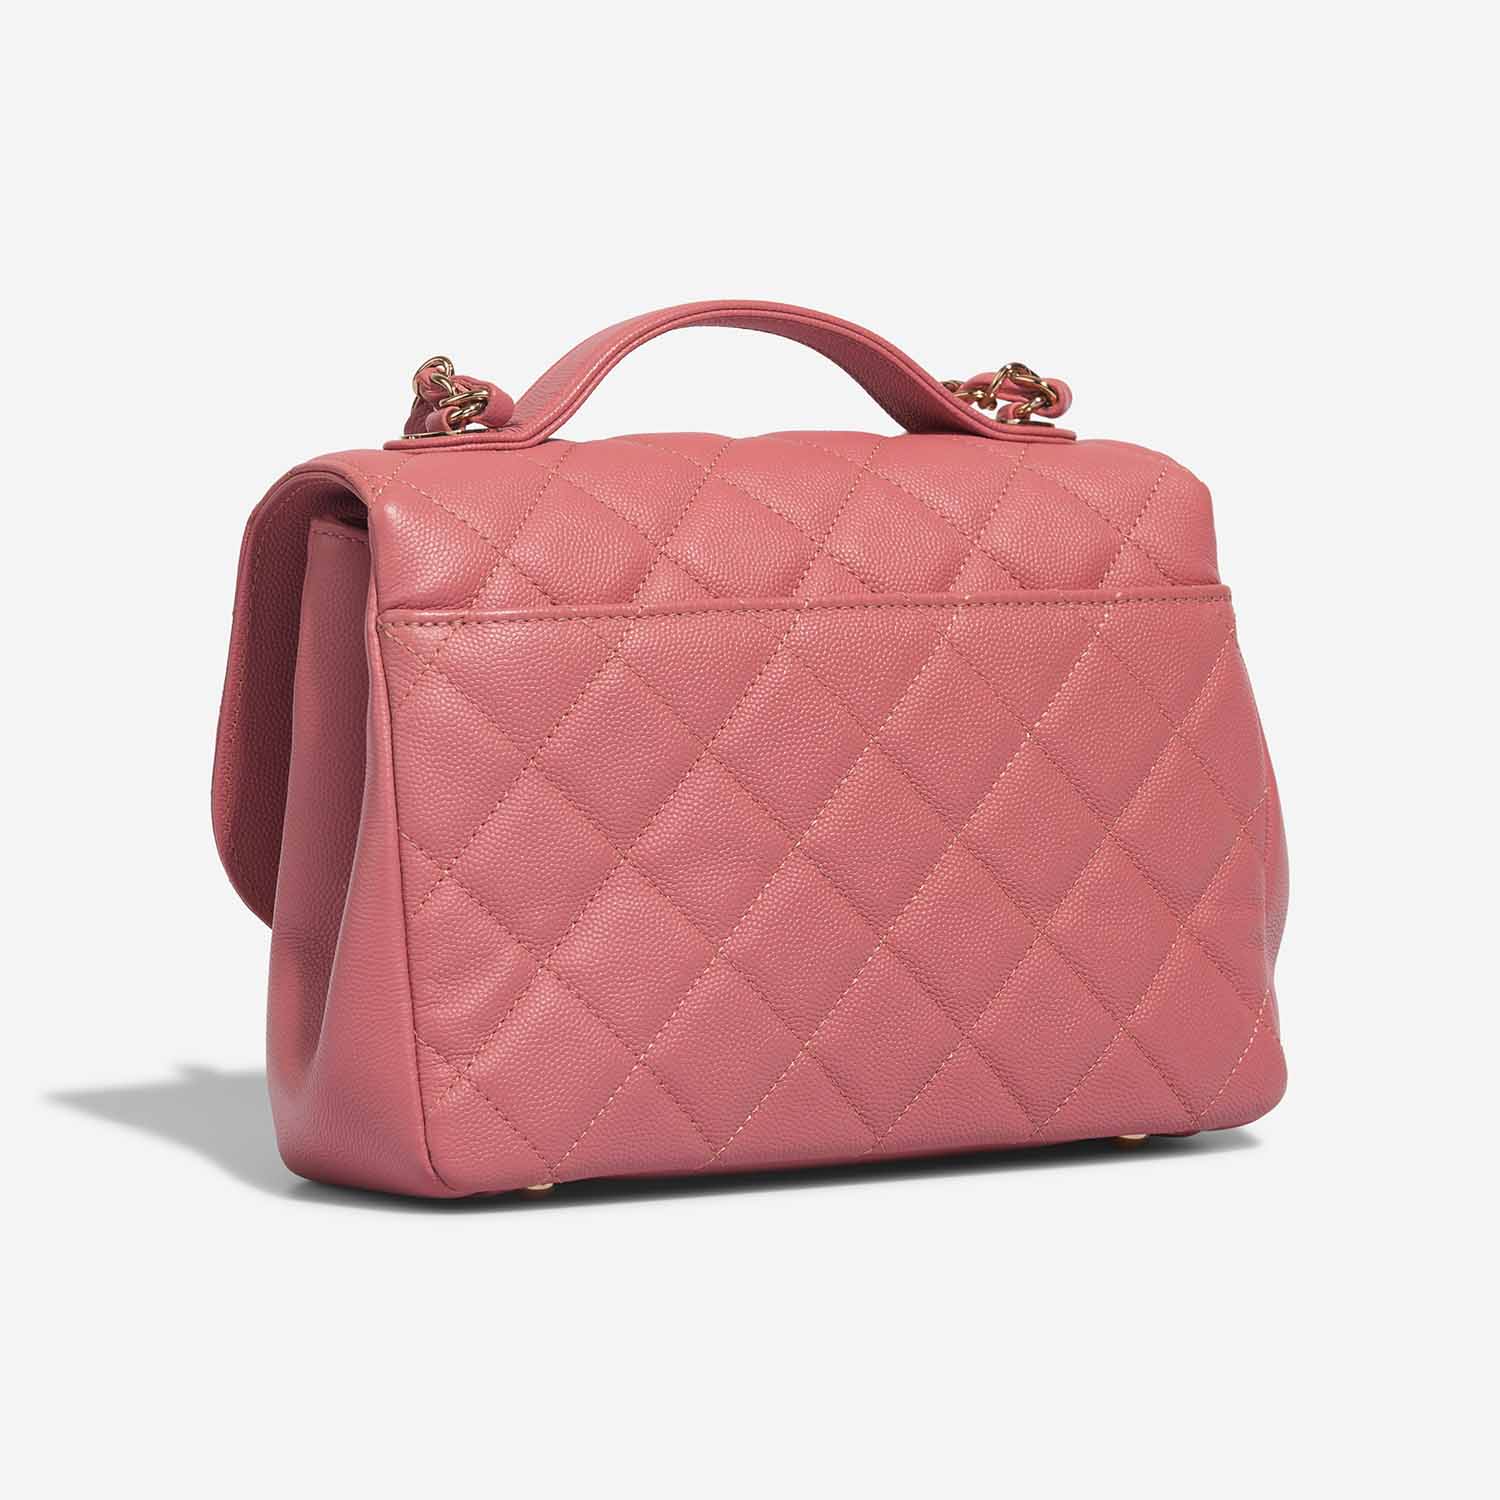 Chanel Business Affinity Medium Coral Pink Side Back | Verkaufen Sie Ihre Designer-Tasche auf Saclab.com